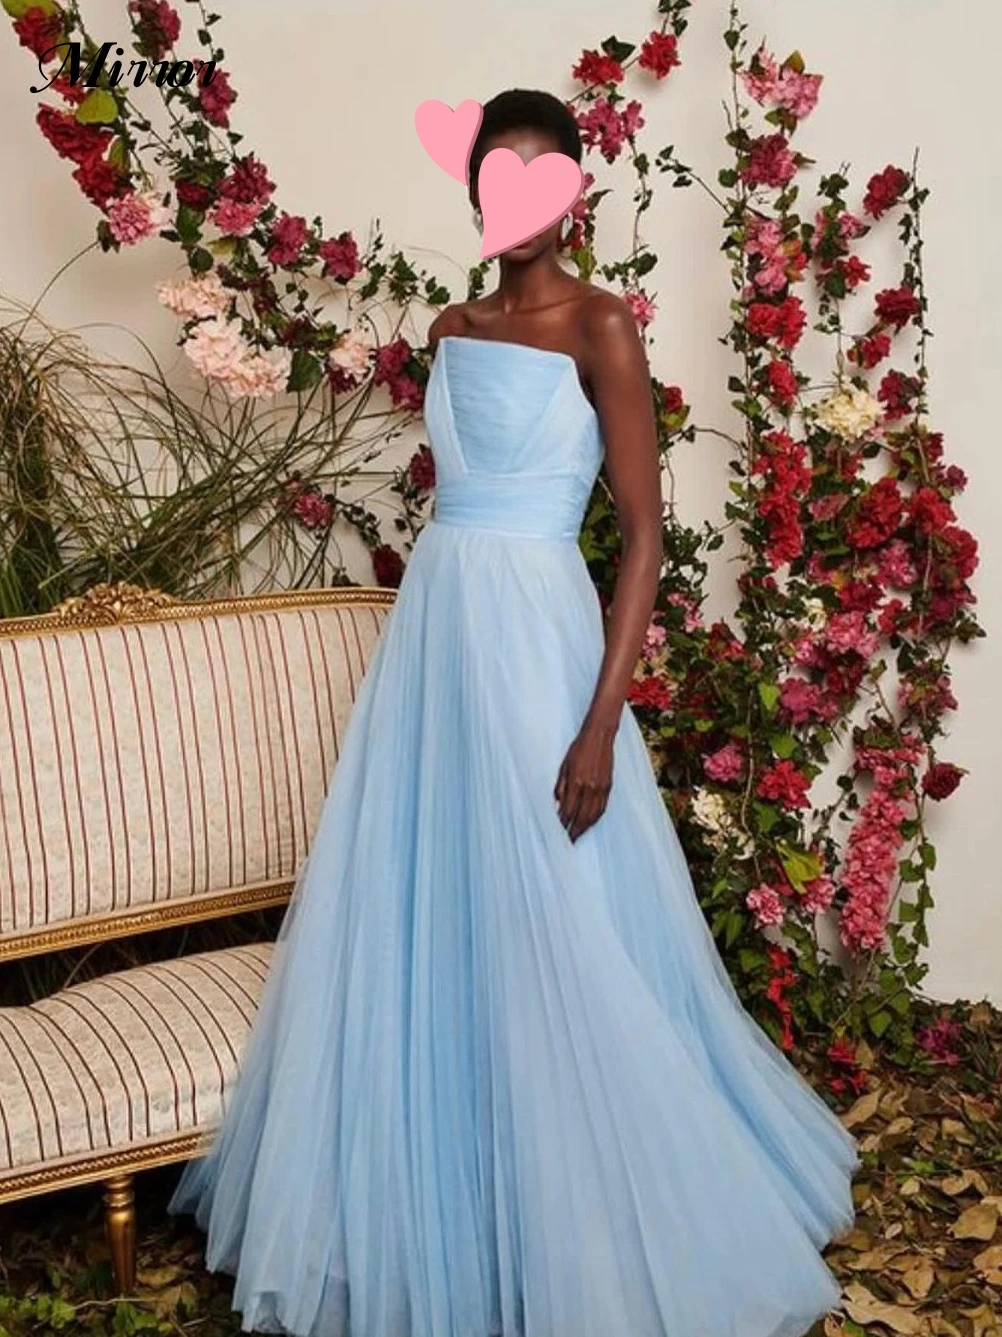 

Женское винтажное платье с рюшами, голубое ТРАПЕЦИЕВИДНОЕ ПЛАТЬЕ с зеркалом, элегантное милое простое платье для официального мероприятия и выпускного вечера, весна 2019